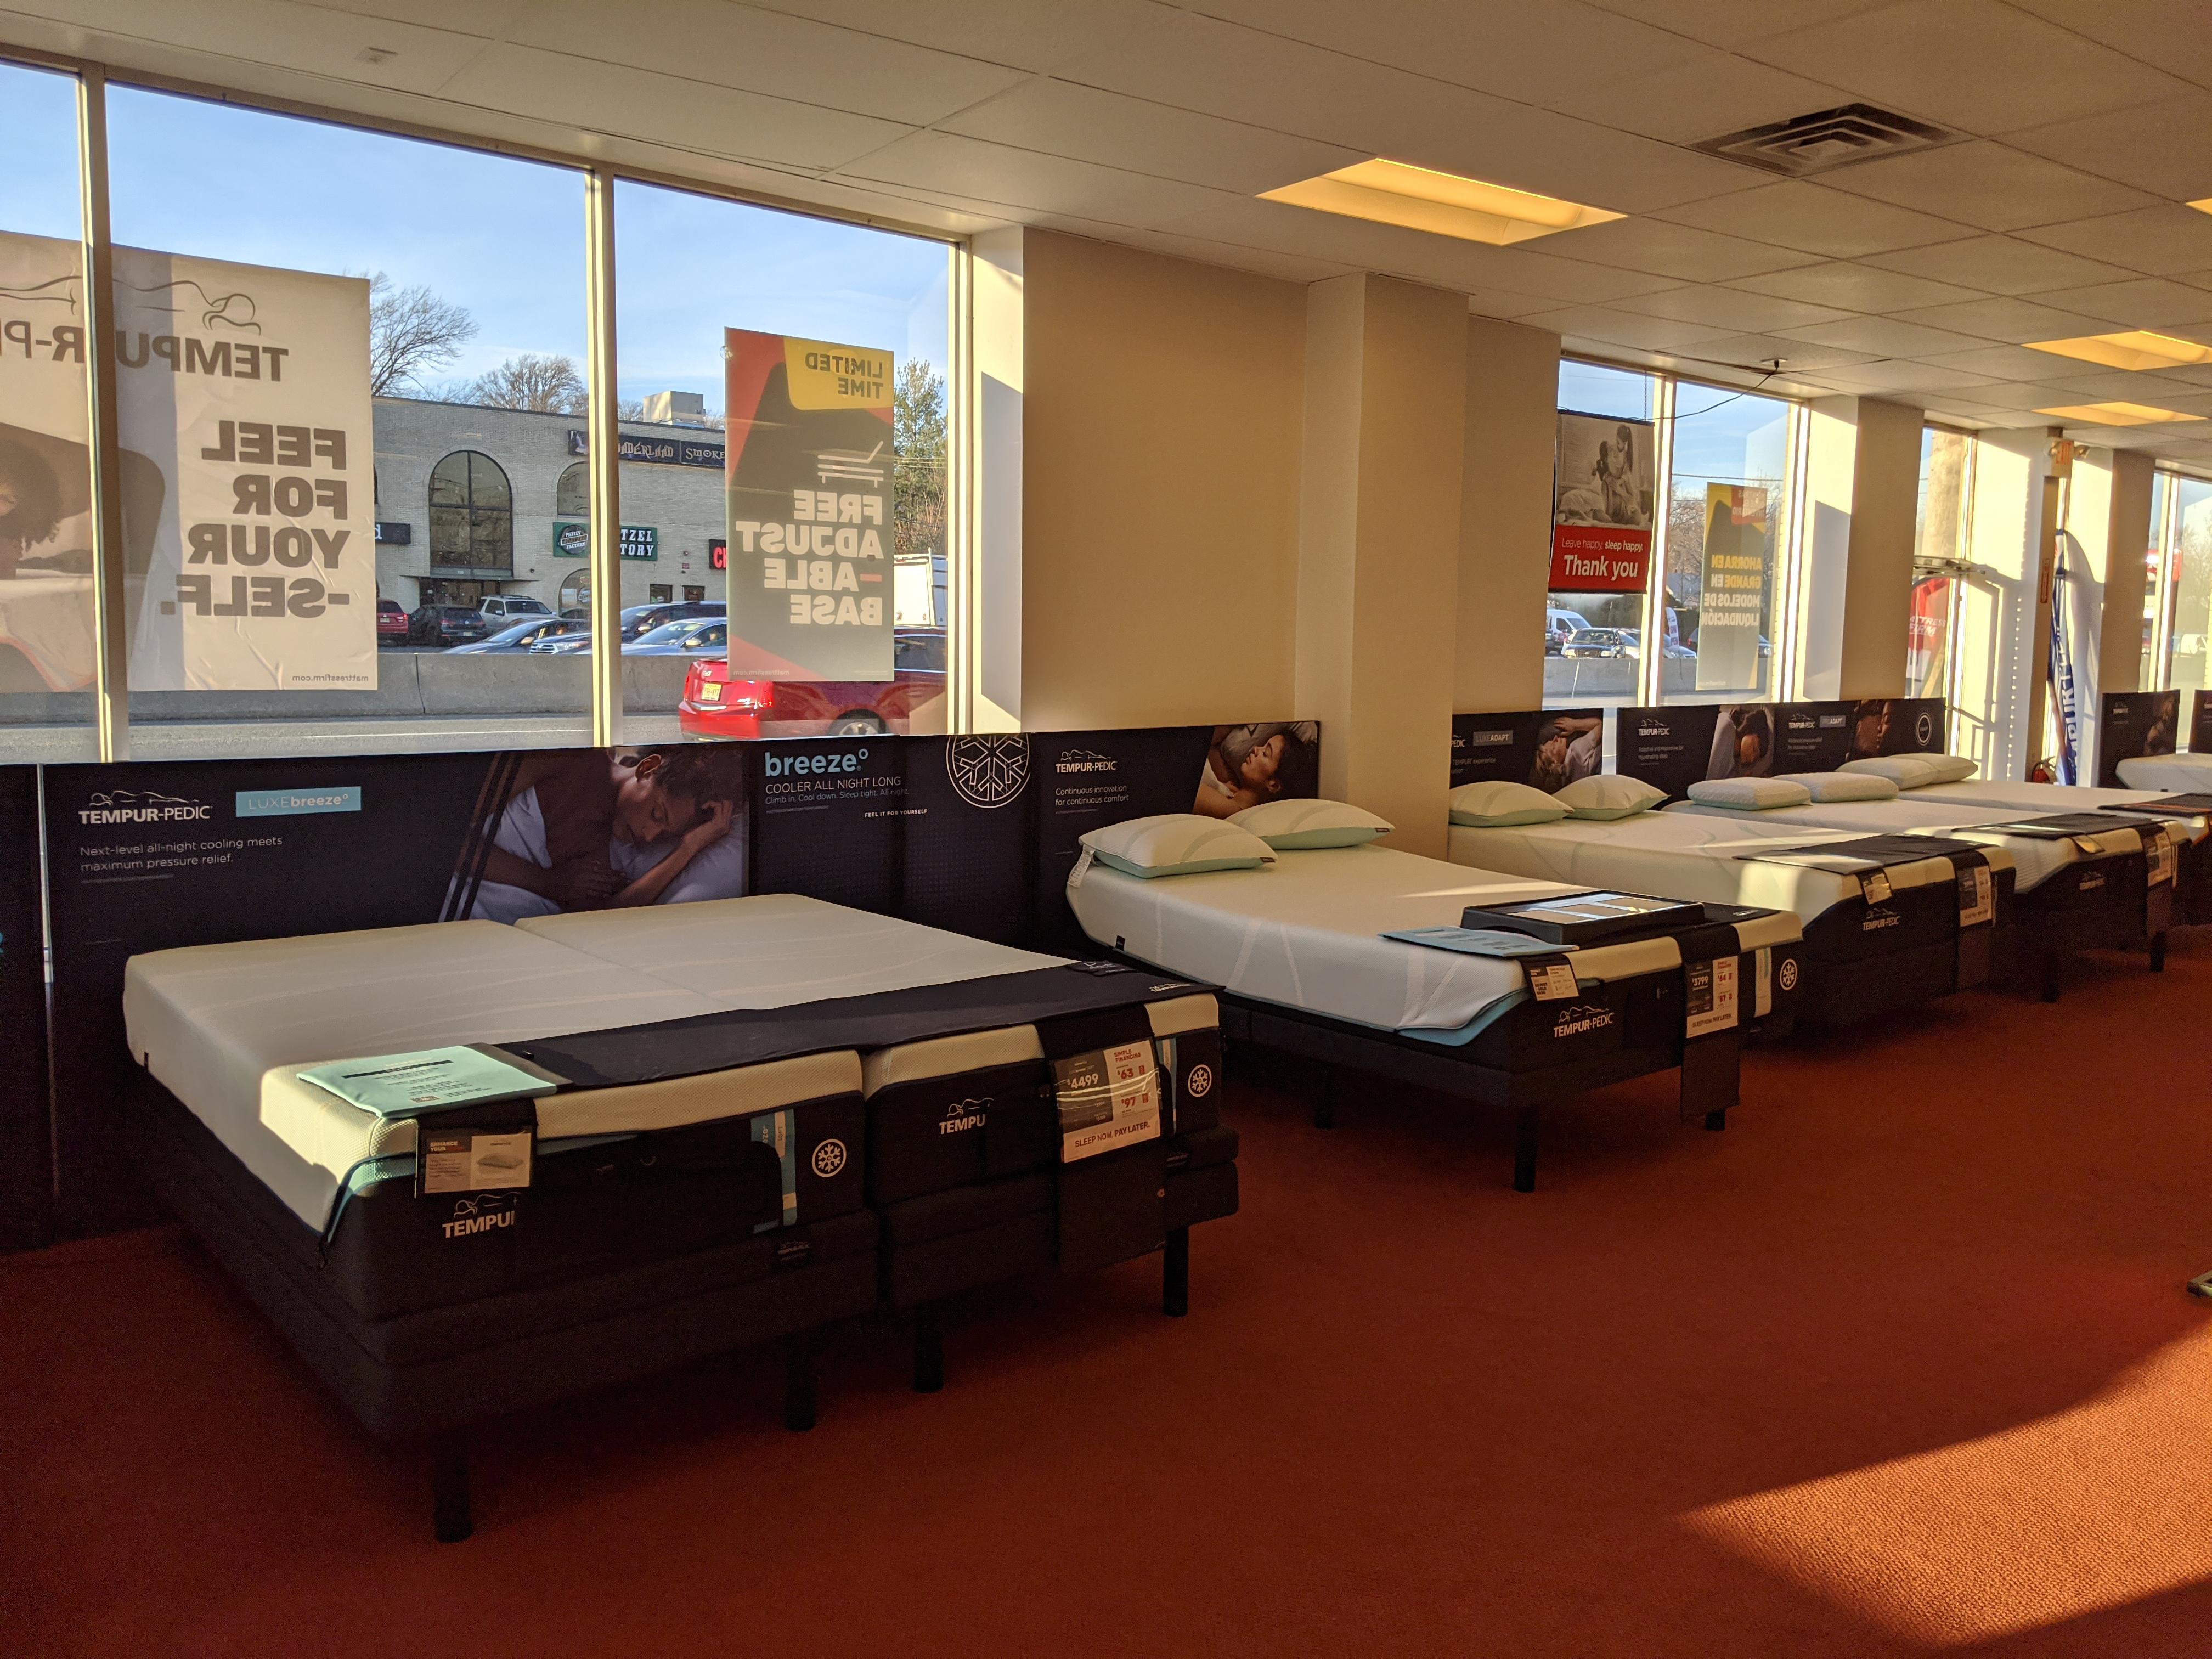 mattress firm.clearance center